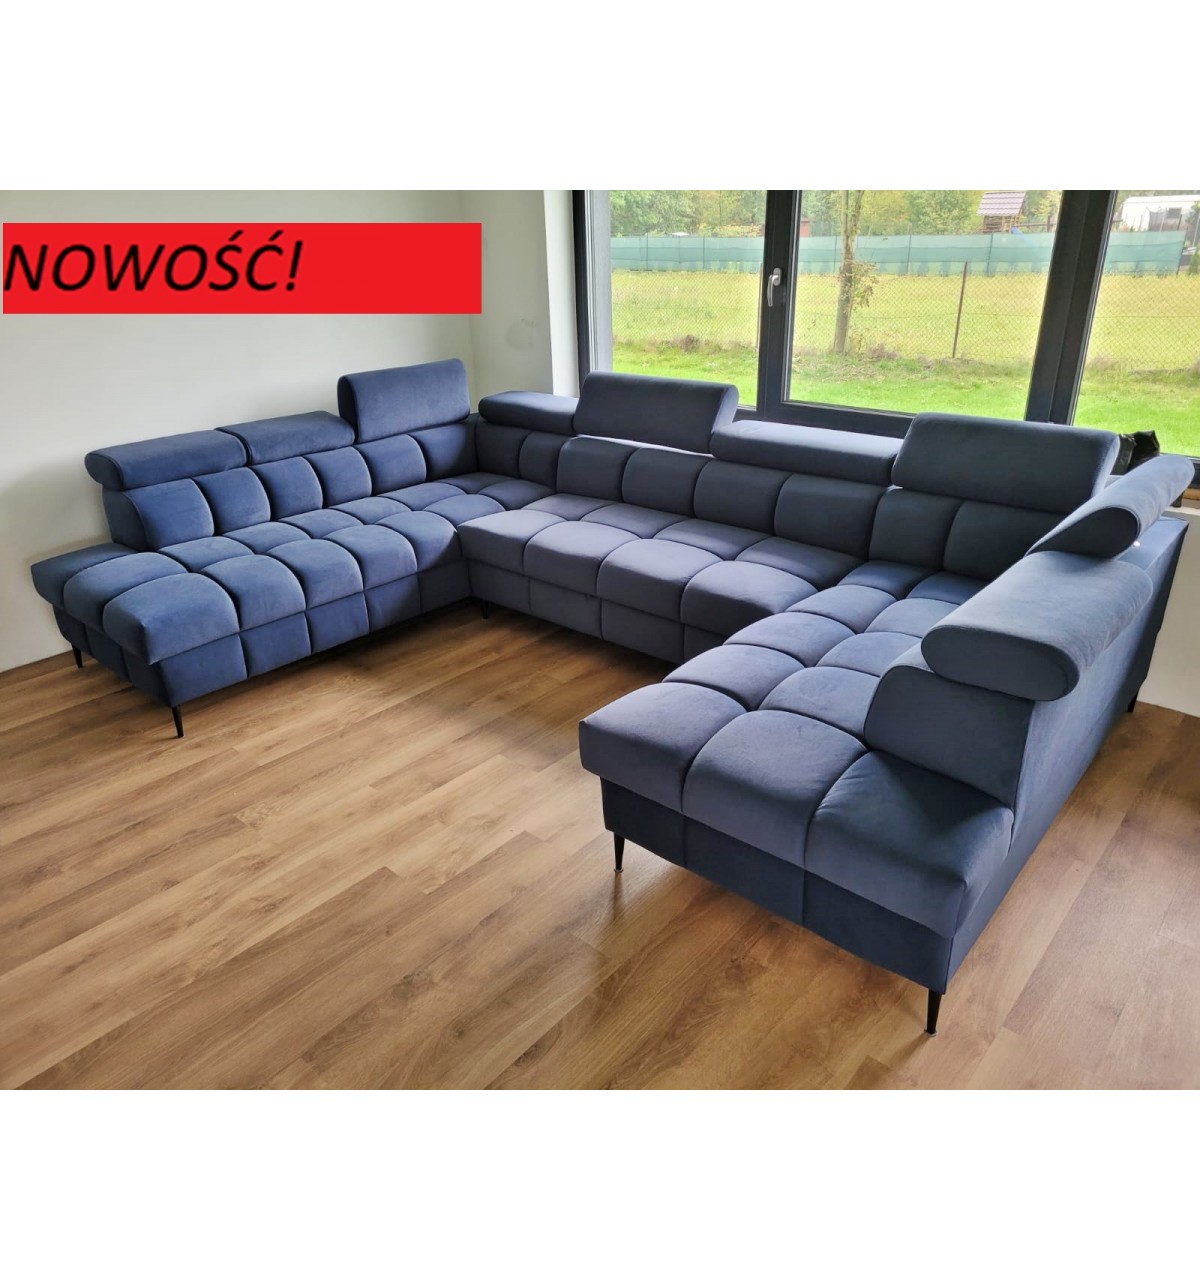 Sofa narożna tapicerowana w kształcie podkowy